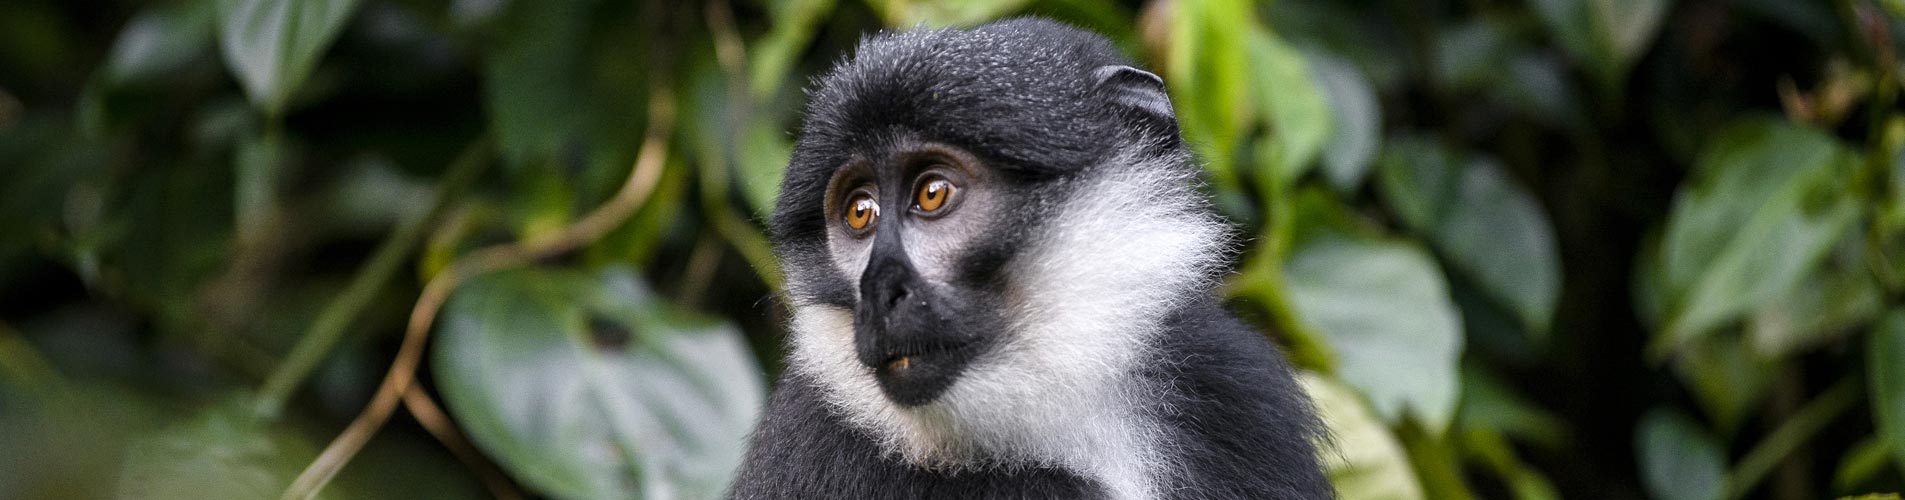 Spectacular Primates Of Uganda